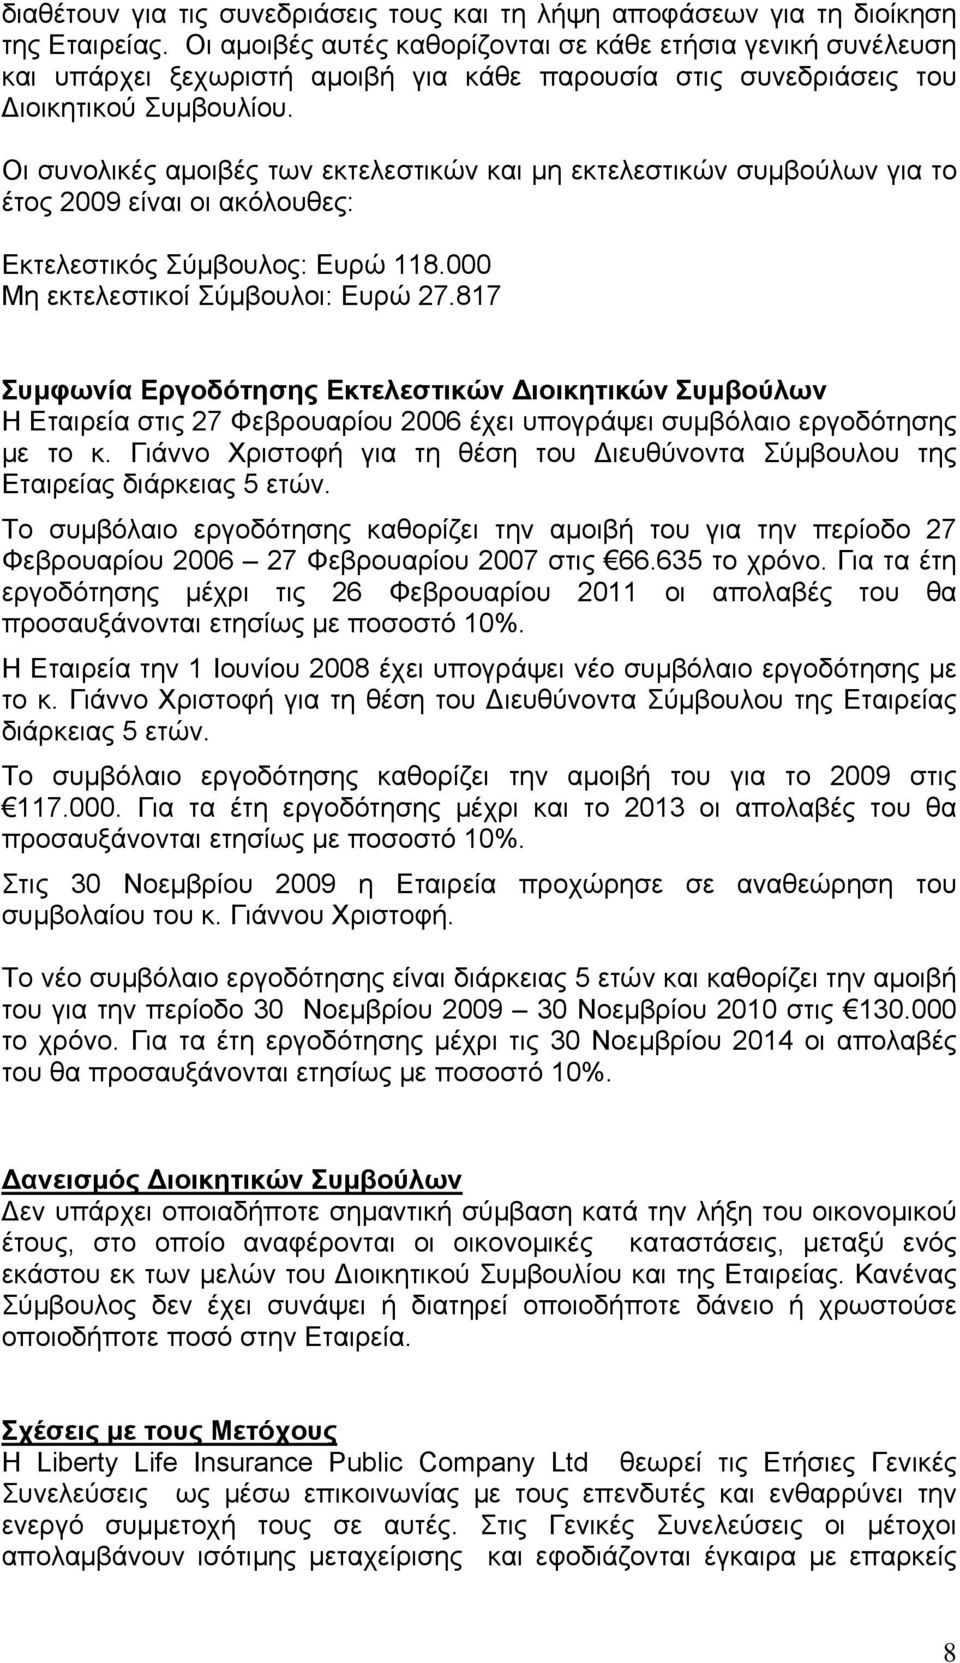 Οι συνολικές αμοιβές των εκτελεστικών και μη εκτελεστικών συμβούλων για το έτος 2009 είναι οι ακόλουθες: Εκτελεστικός Σύμβουλος: Ευρώ 118.000 Μη εκτελεστικοί Σύμβουλοι: Ευρώ 27.